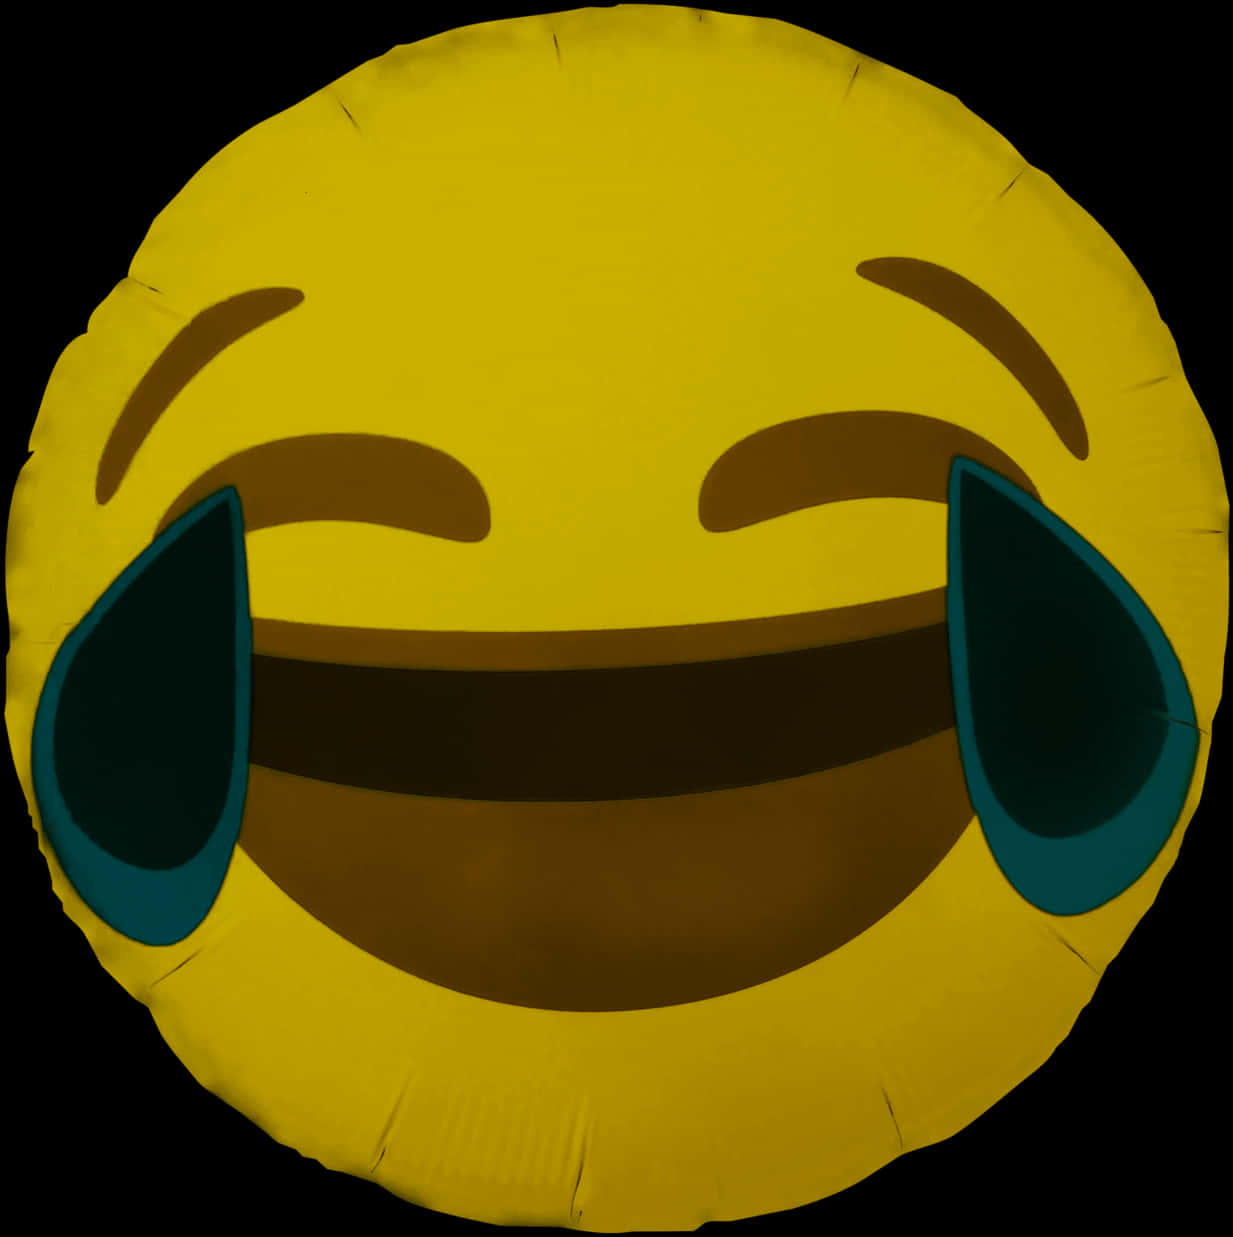 Laughing Emoji Cushion.jpg PNG image